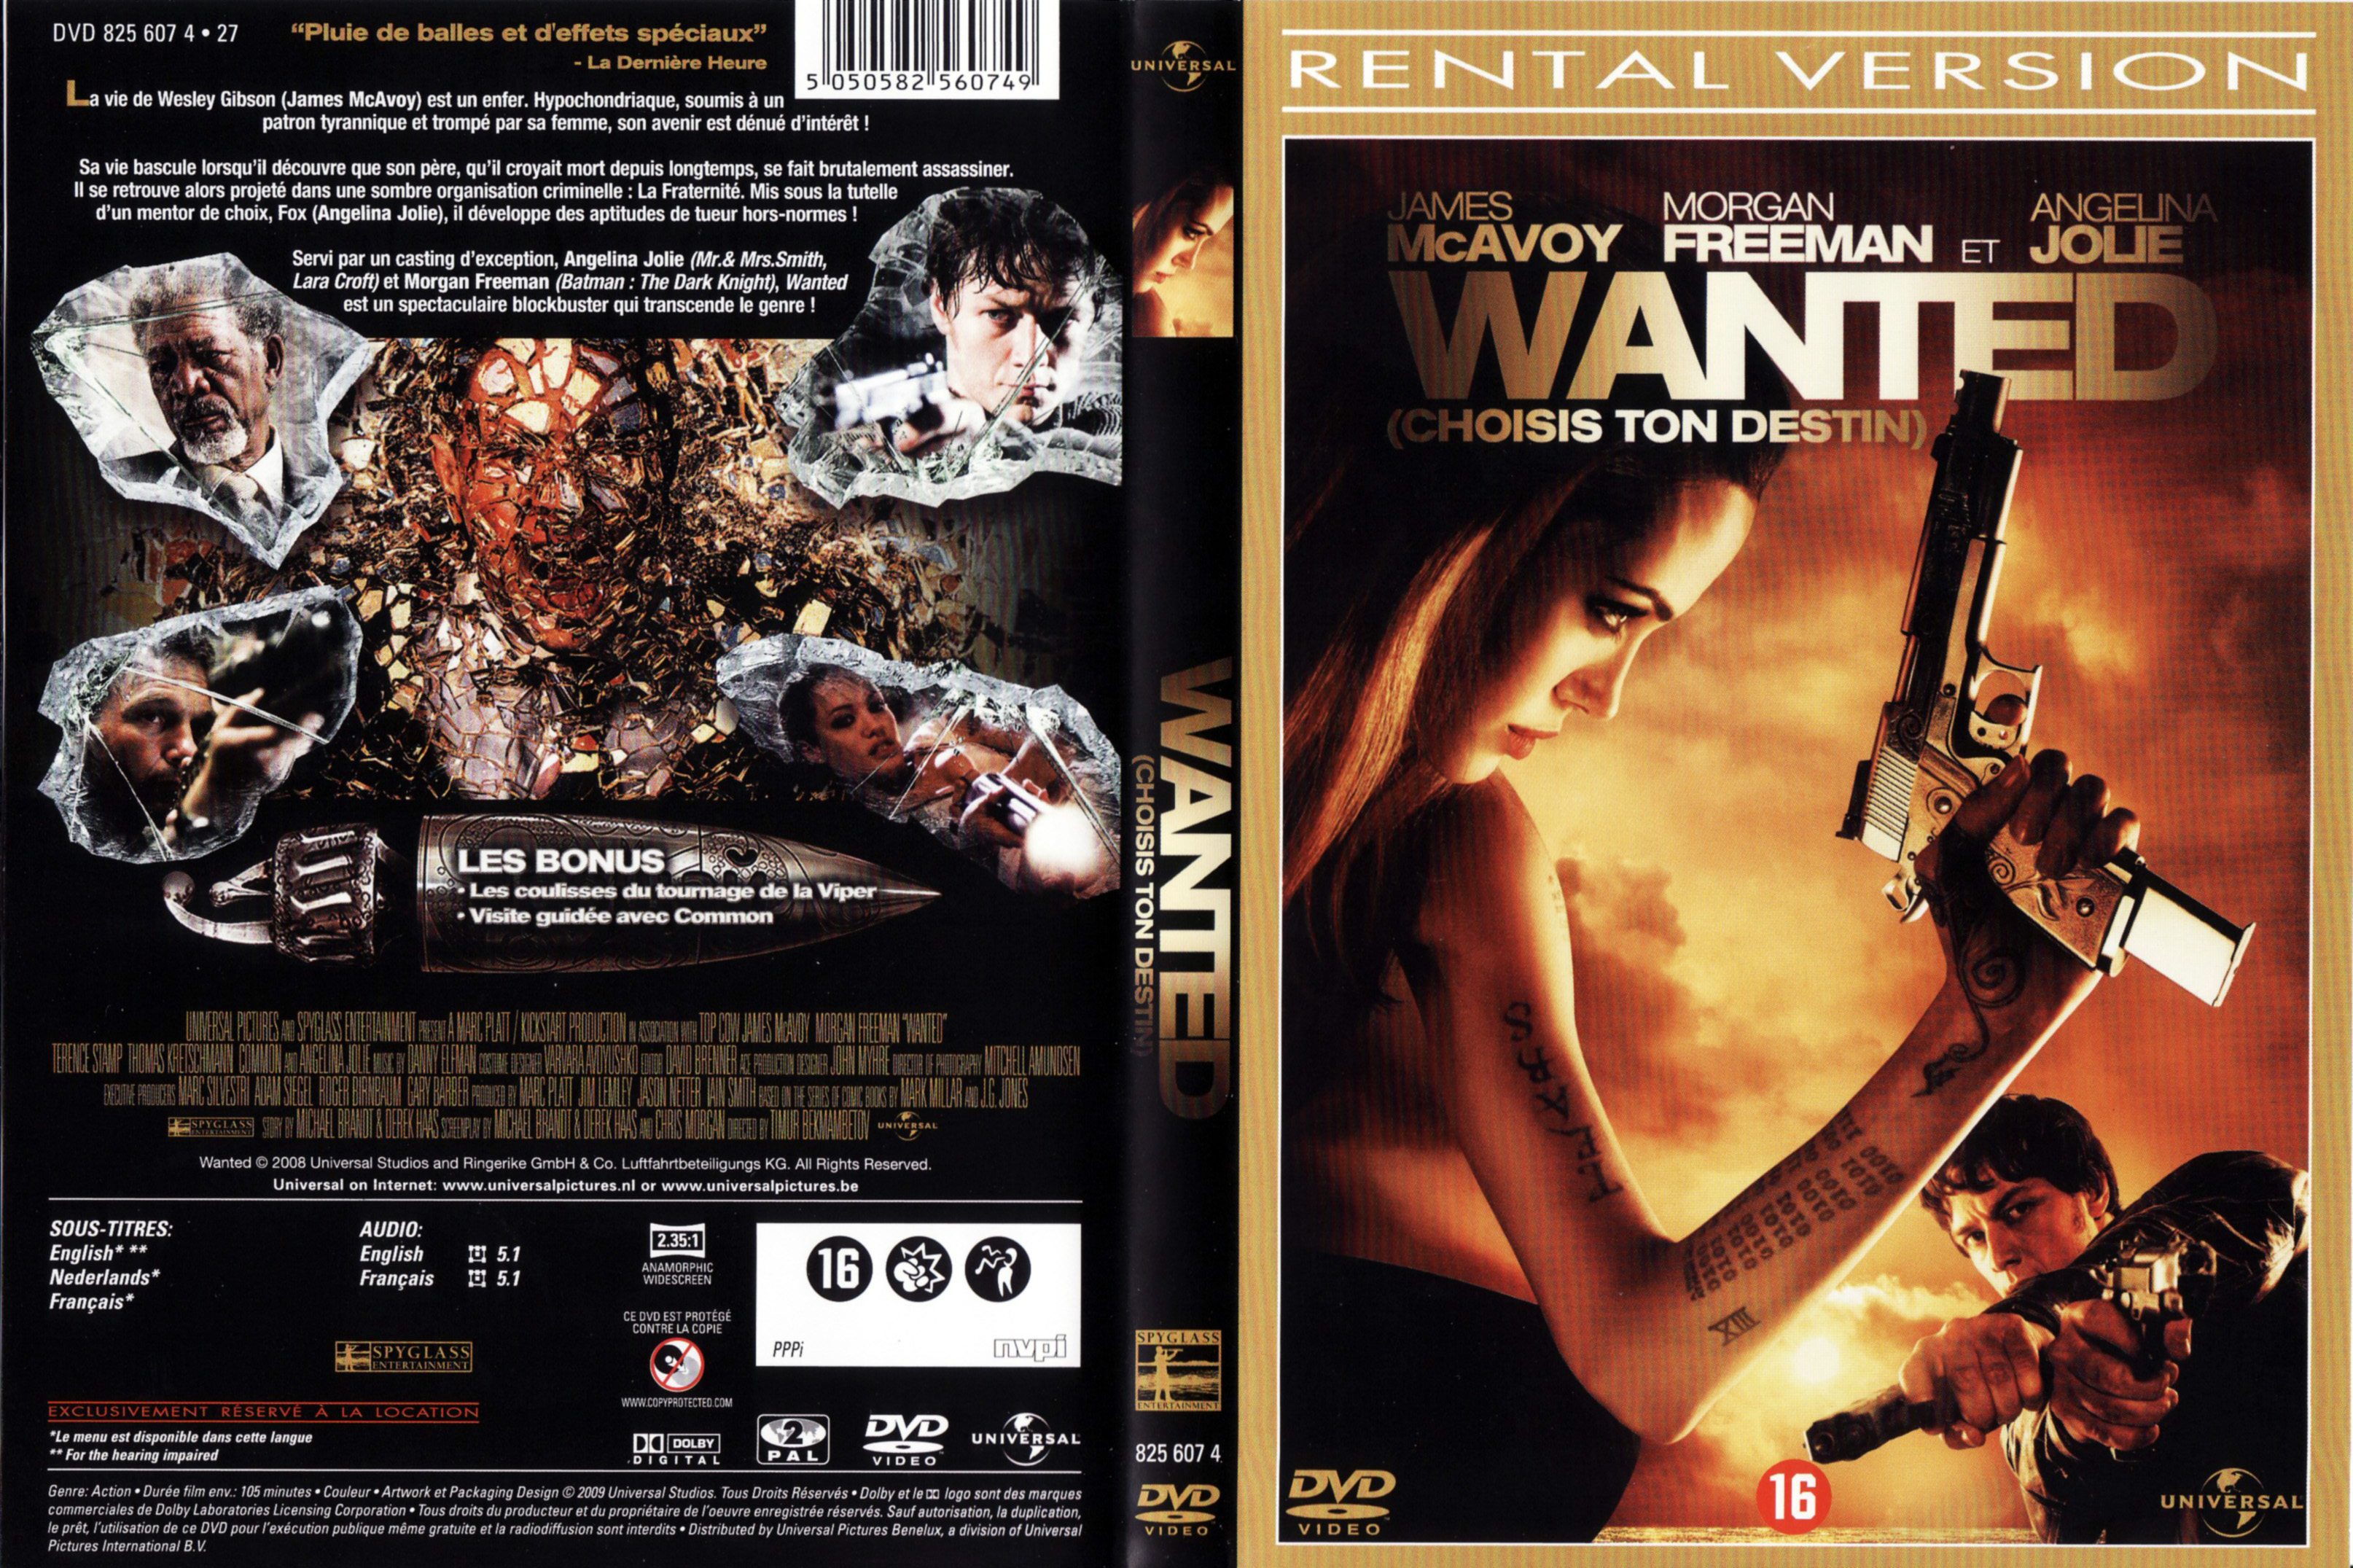 Jaquette DVD Wanted choisis ton destin v2